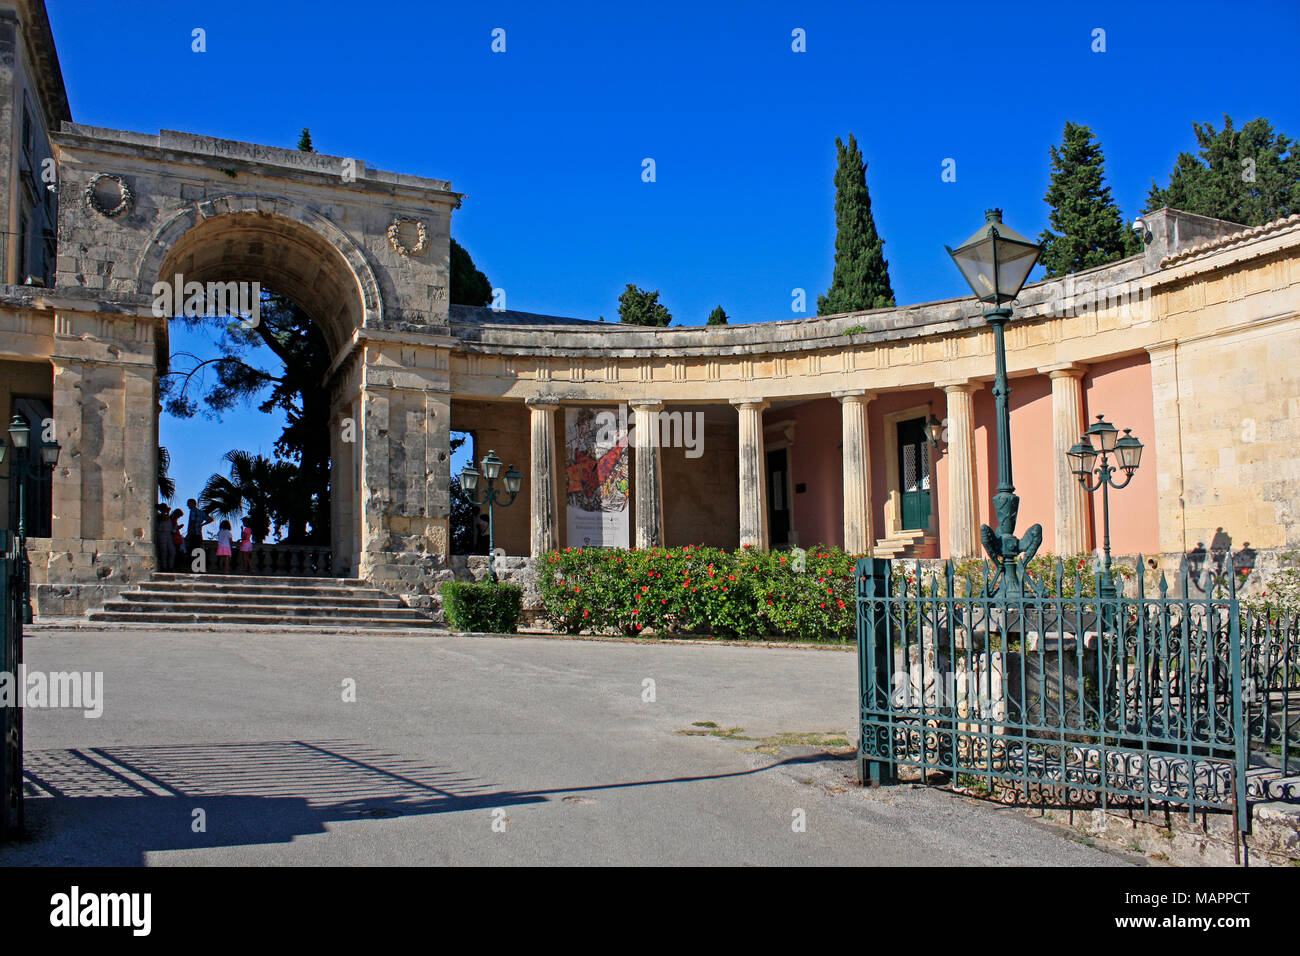 Palast des Heiligen Michael und Georg Palaia Anaktora KORFU, IONISCHE INSEL Griechenland EU Europäische Union. Stockfoto